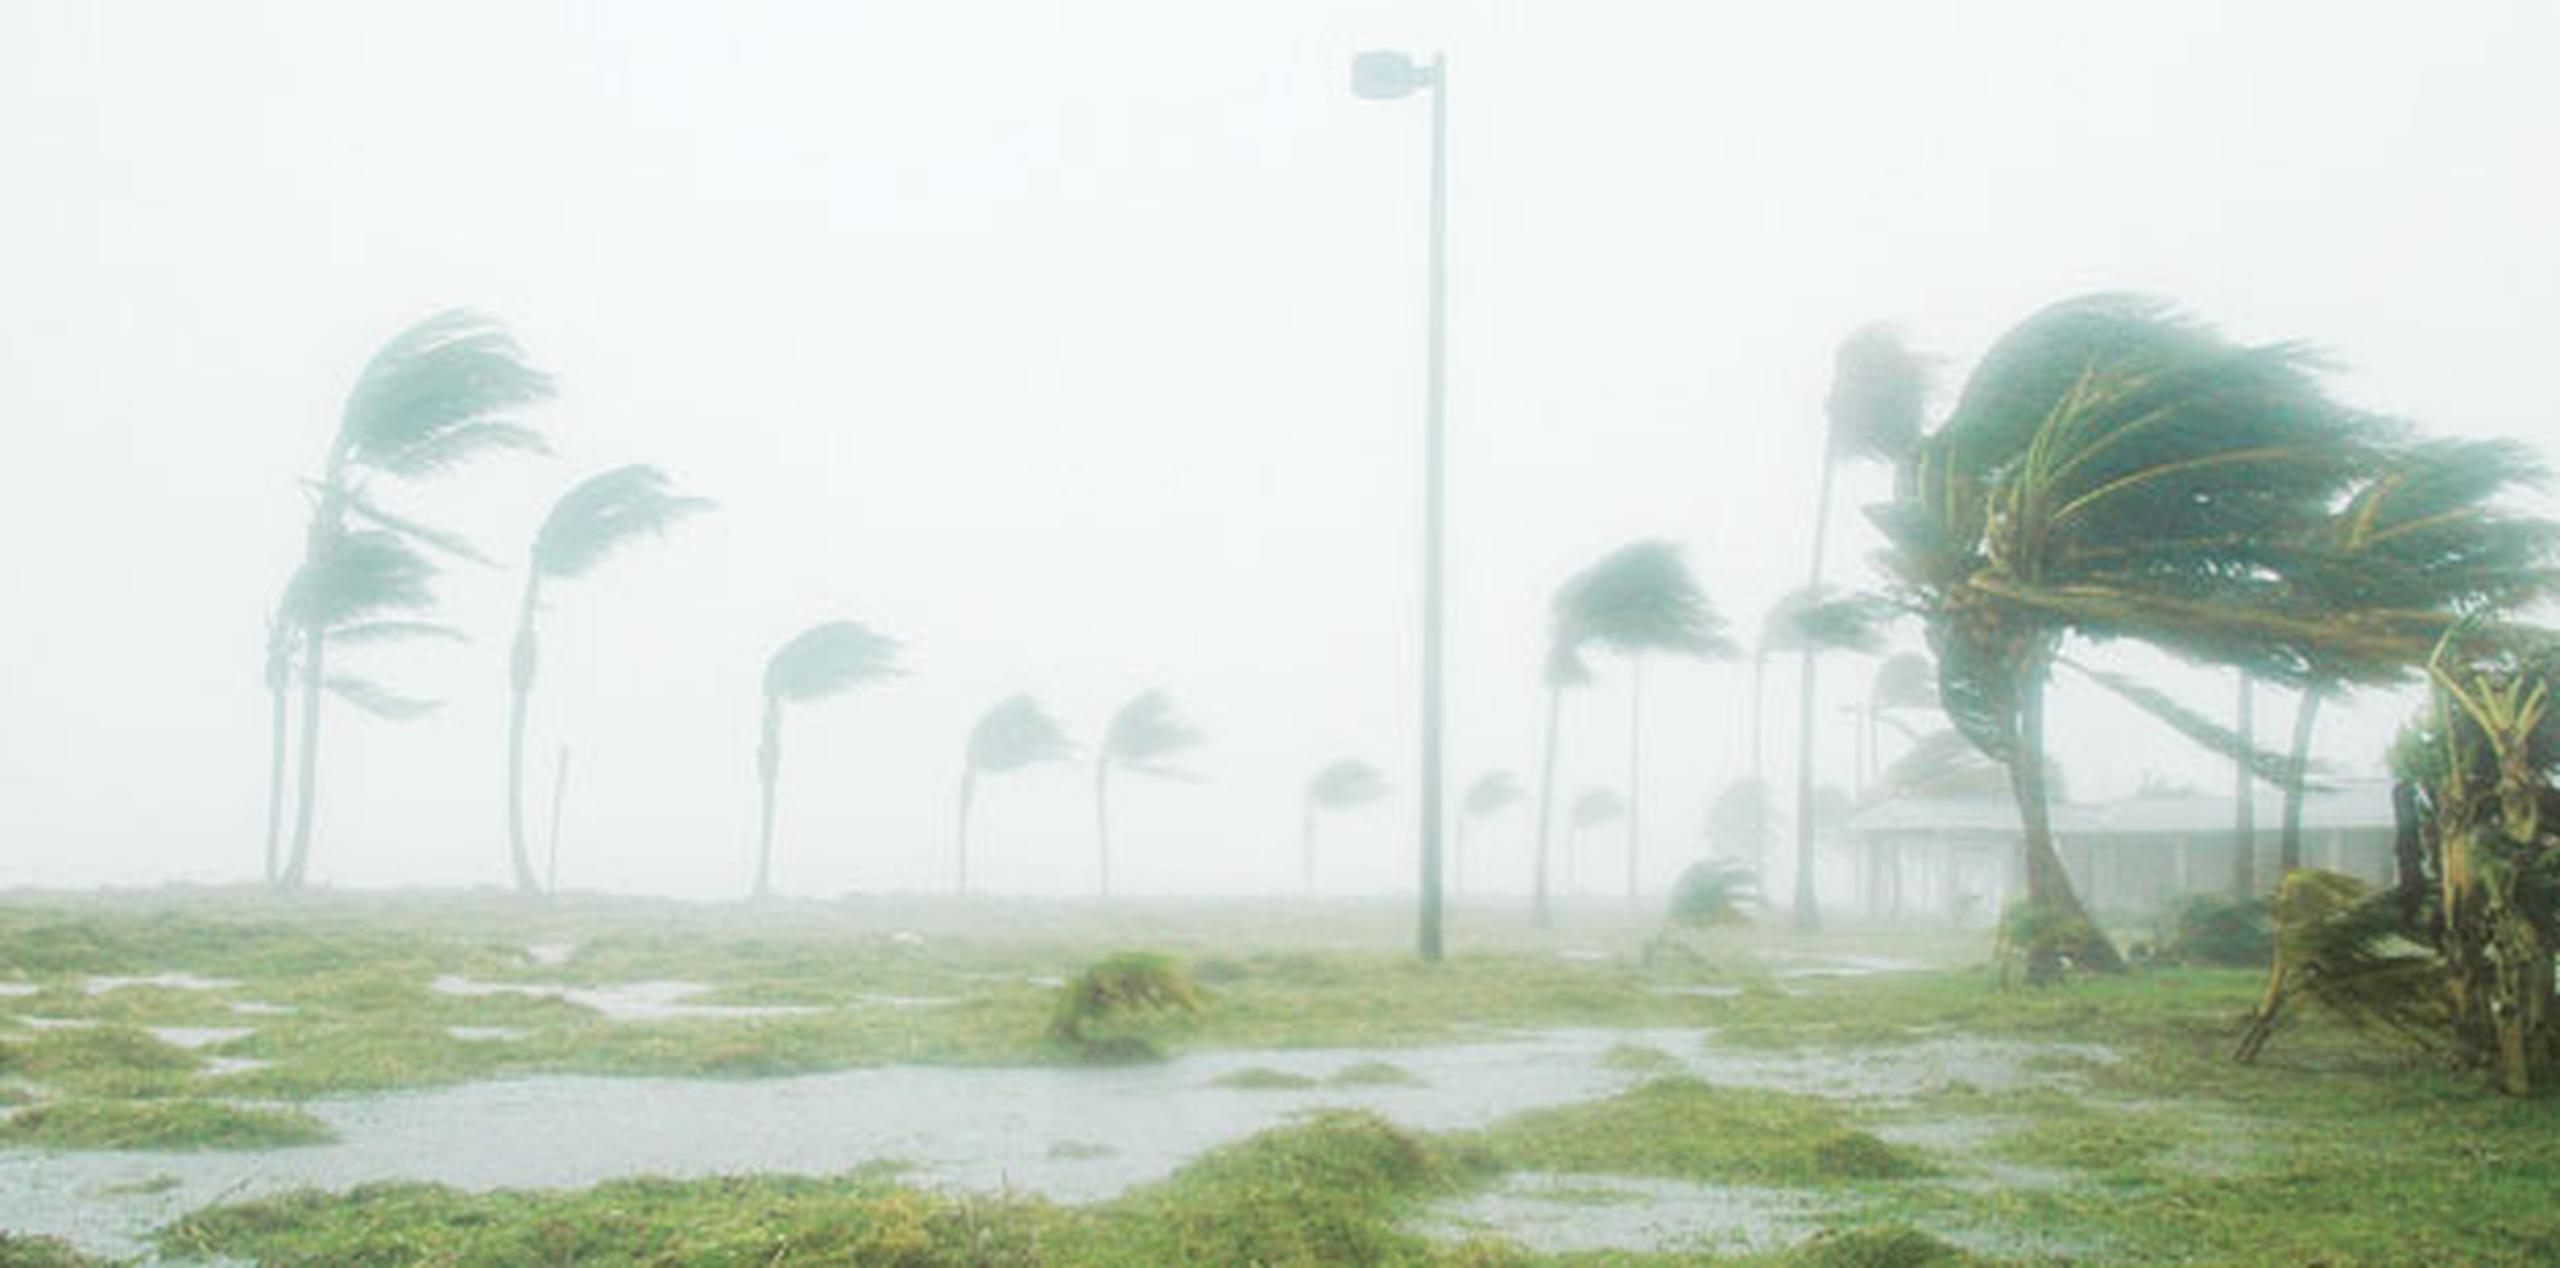 Con el fin de la temporada de huracanes 2015, el estado de Florida continúa una racha de diez años sin sufrir el impacto de un huracán, lo que supone un nuevo récord para la península. (Archivo)